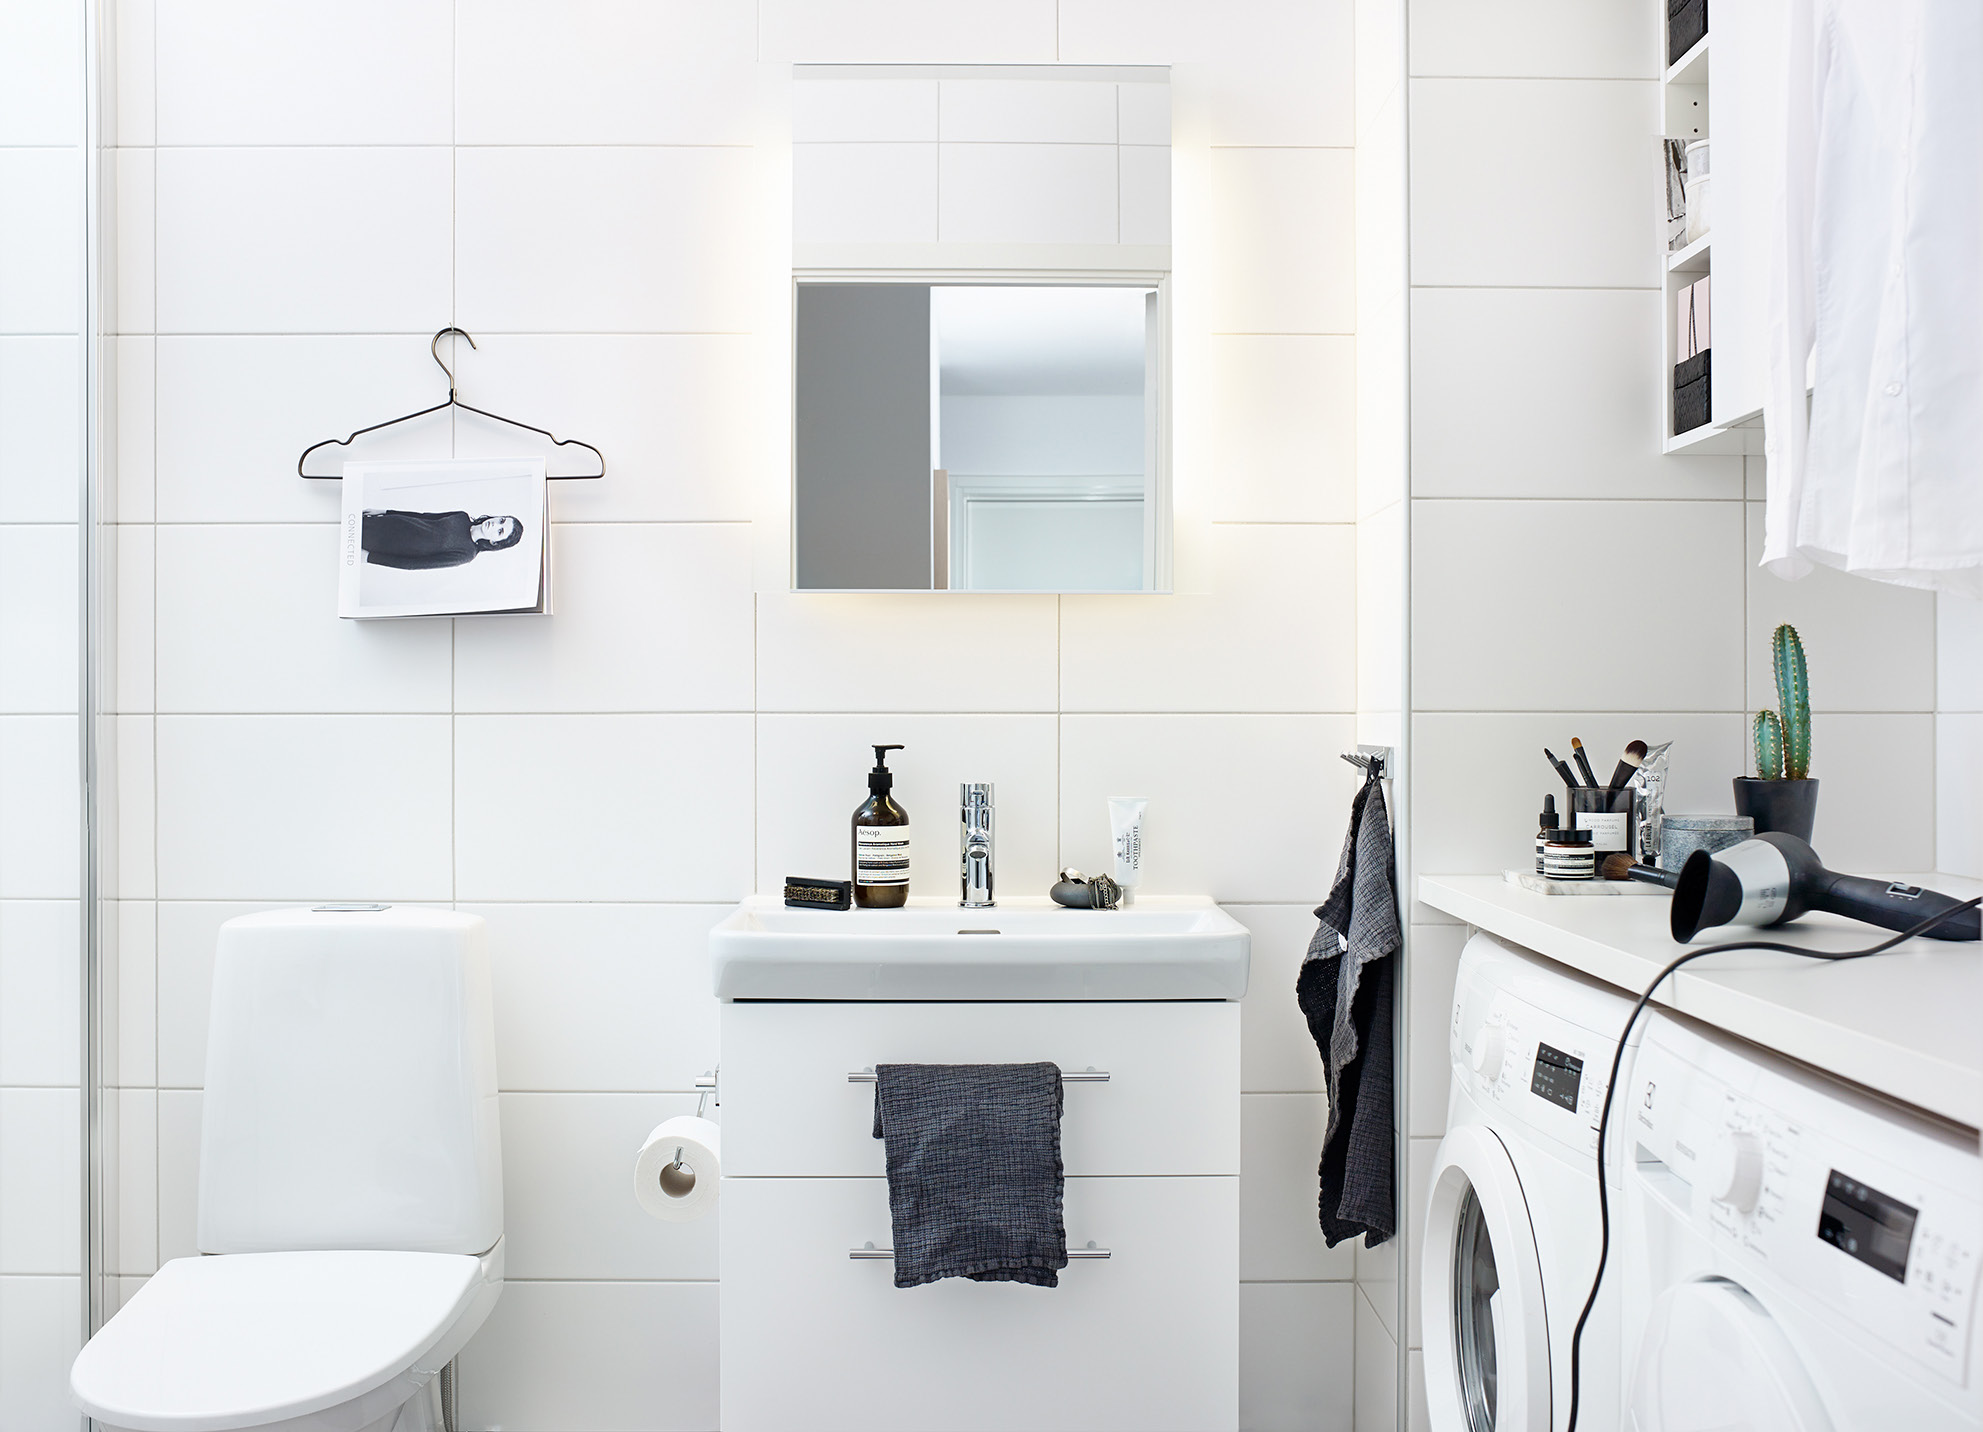 RUM FÖR SKUM Vill du ha ett effektivt badrum där du kan snabb duscha och borsta tänderna innan jobbet? Eller önskar du dig ett riktigt njutarrum med spakänsla där tiden lätt flyter iväg?